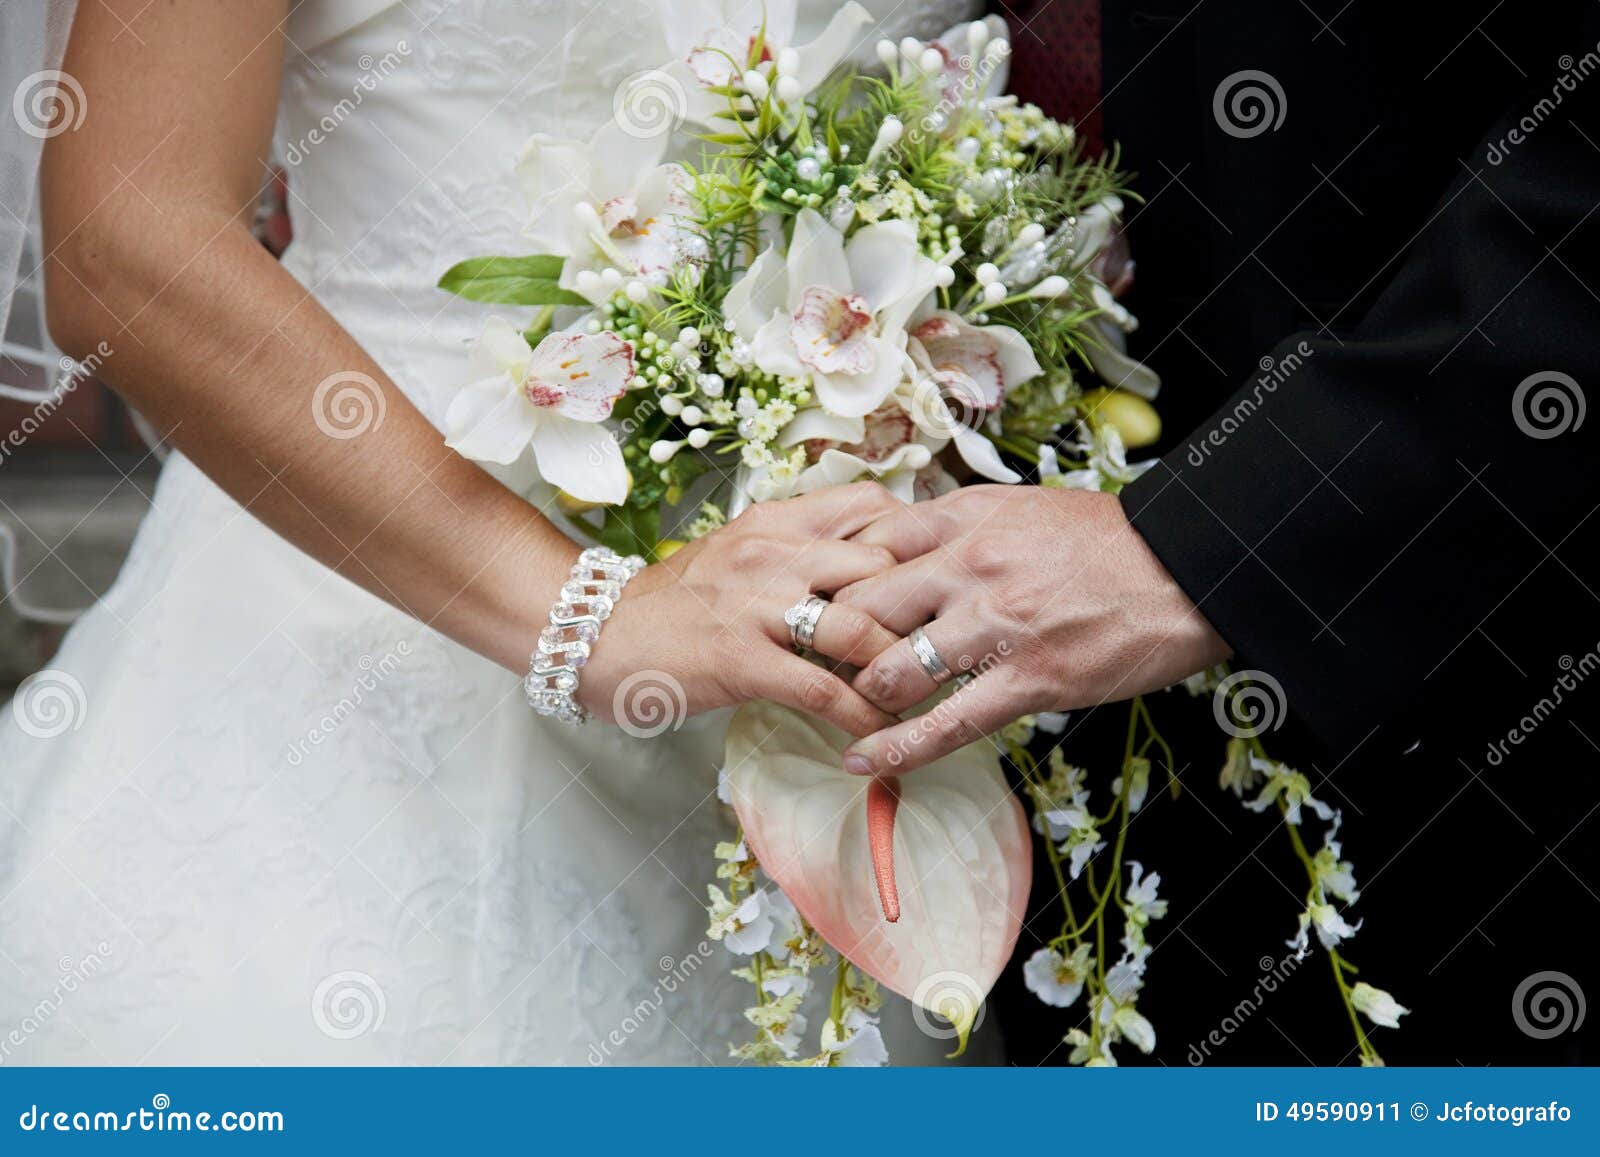 Trzymać bridal bukiet. Państwo młodzi trzyma bridal bukieta zakończenie up